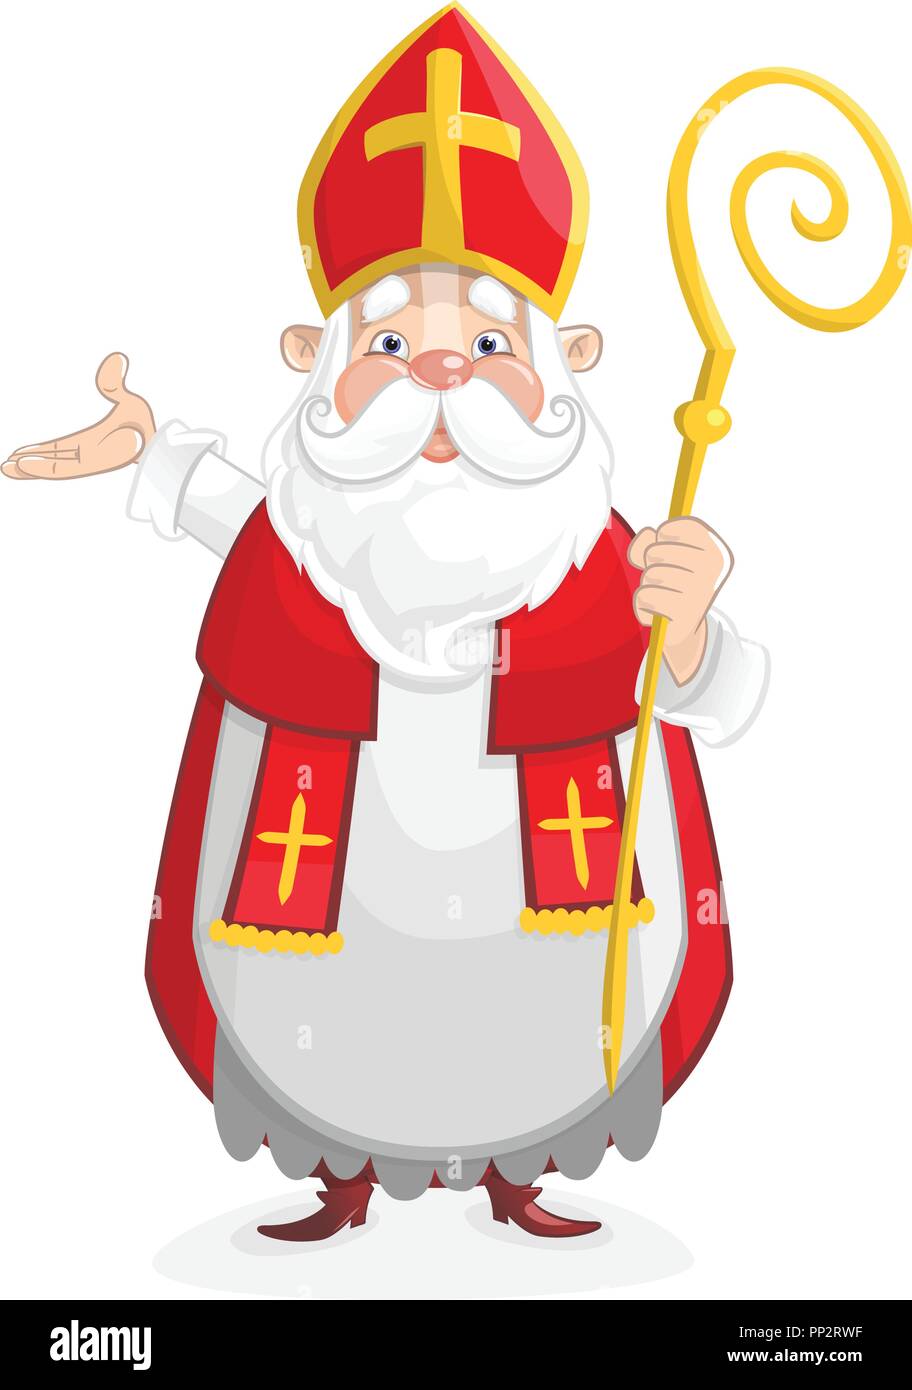 Cute Saint Nicholas cartoon character Stock Vector